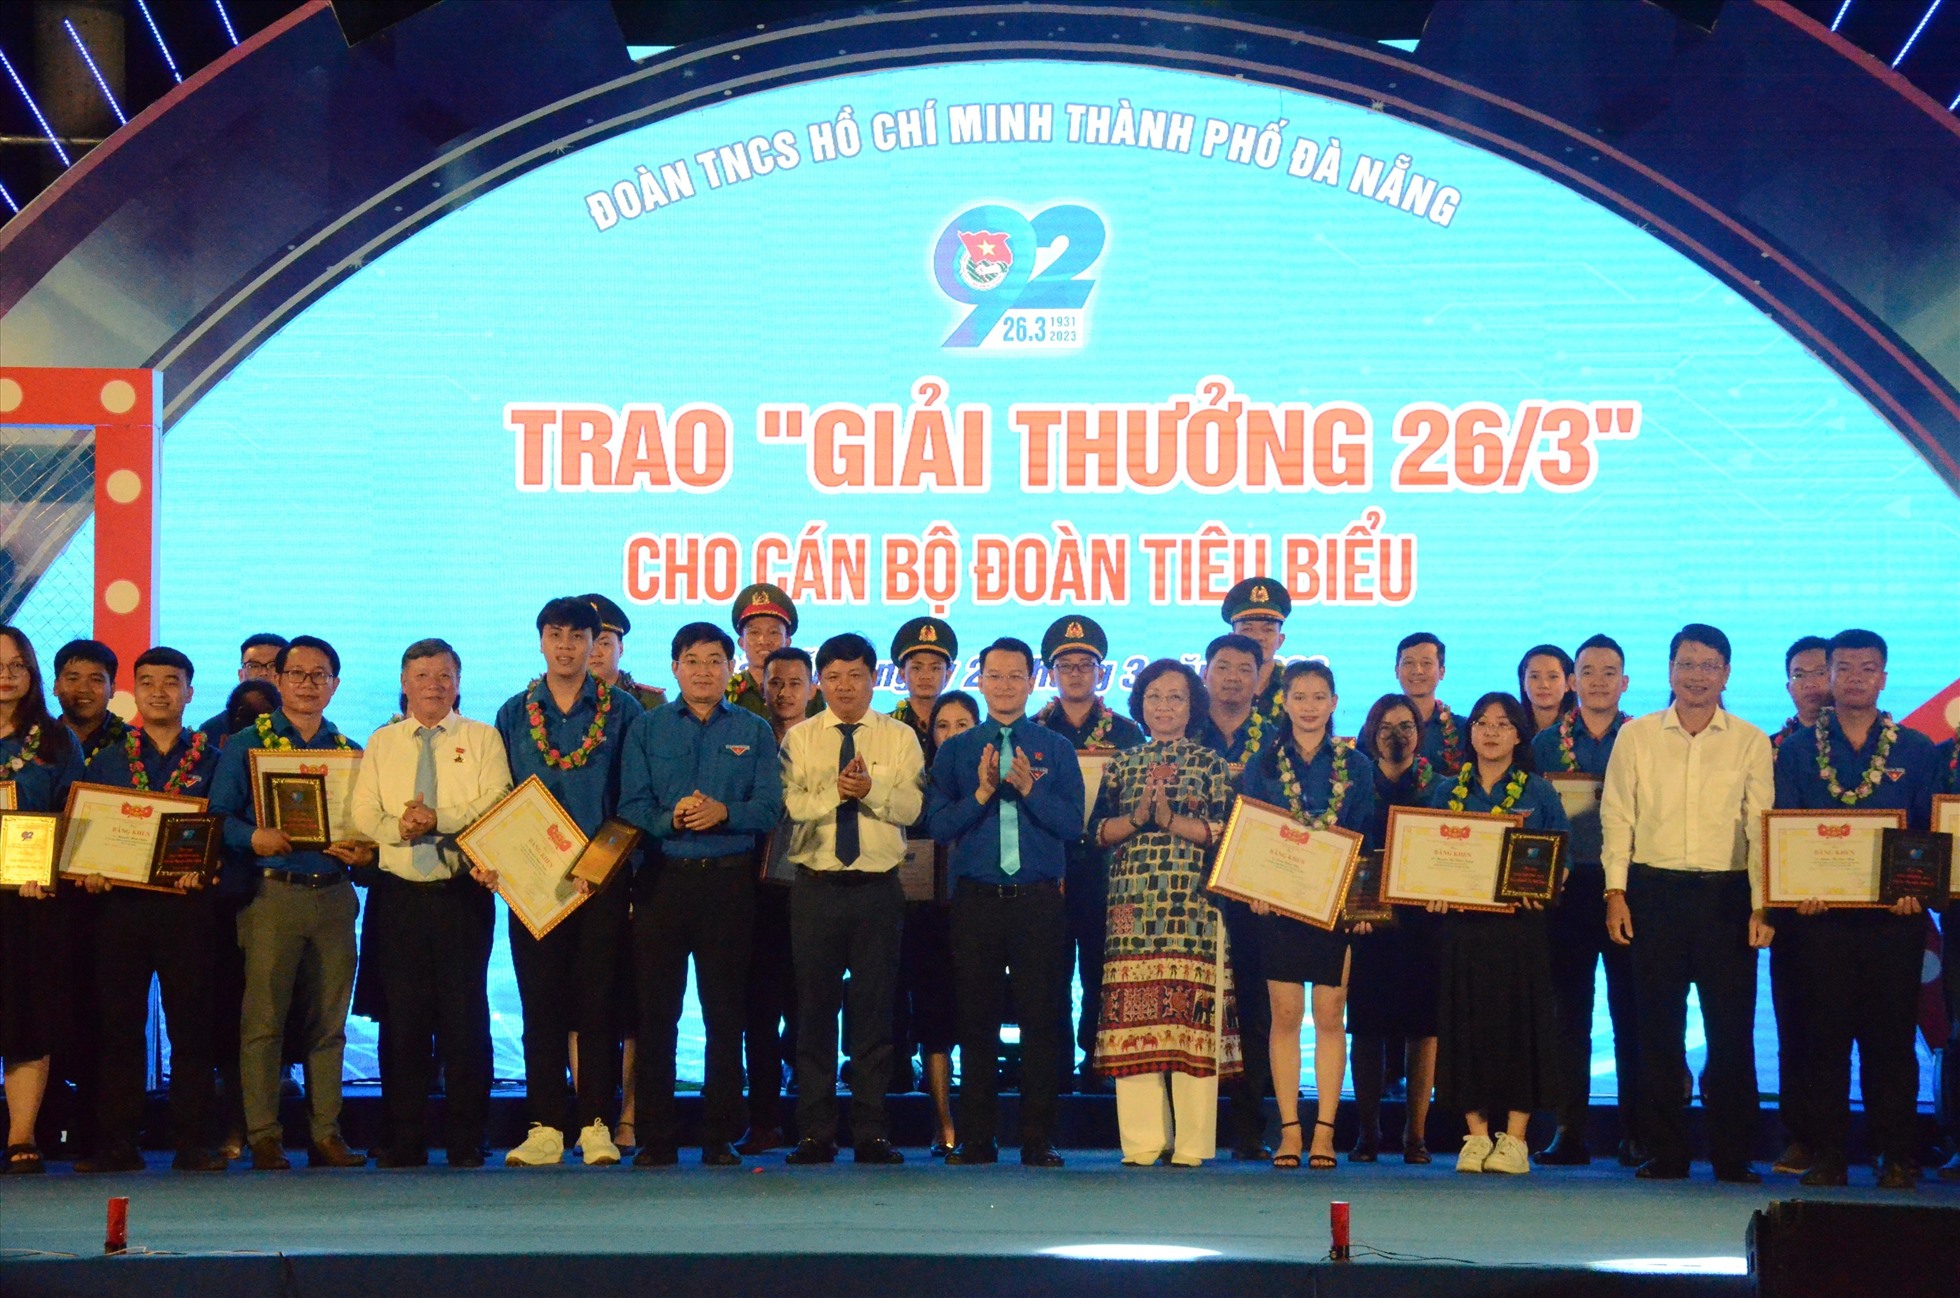 Trao “Giải thưởng 26.3” năm 2023 cho 52 cán bộ đoàn tiêu biểu có sáng kiến. Ảnh: Mai Hương